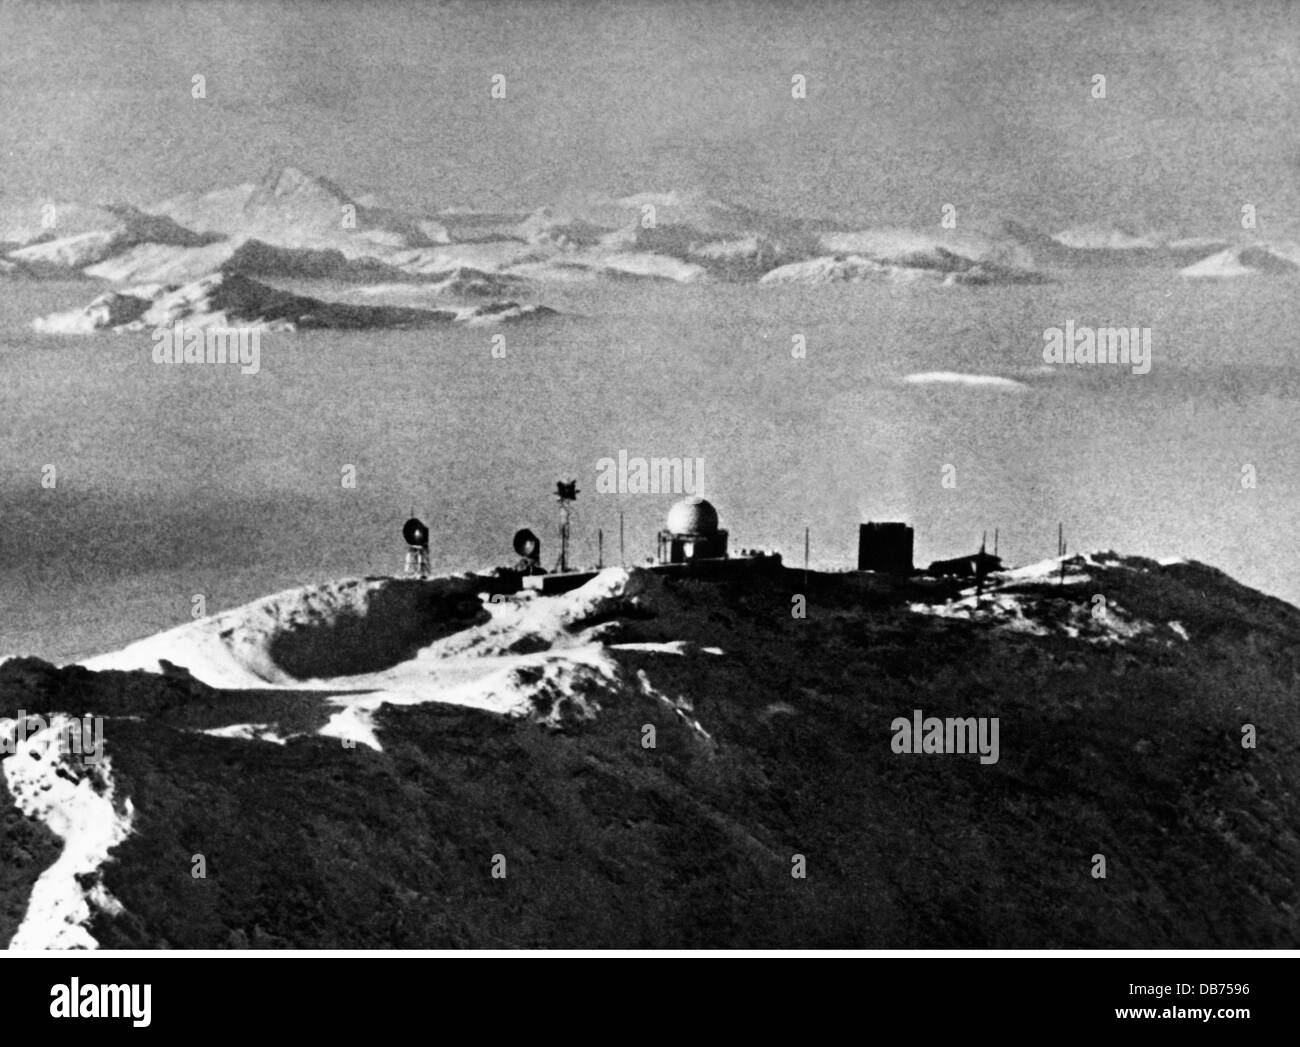 Militär, USA, Luftwaffe, Luftverteidigung, Radarstation, Arktis, 1958, zusätzliche-Rechte-Clearences-nicht verfügbar Stockfoto